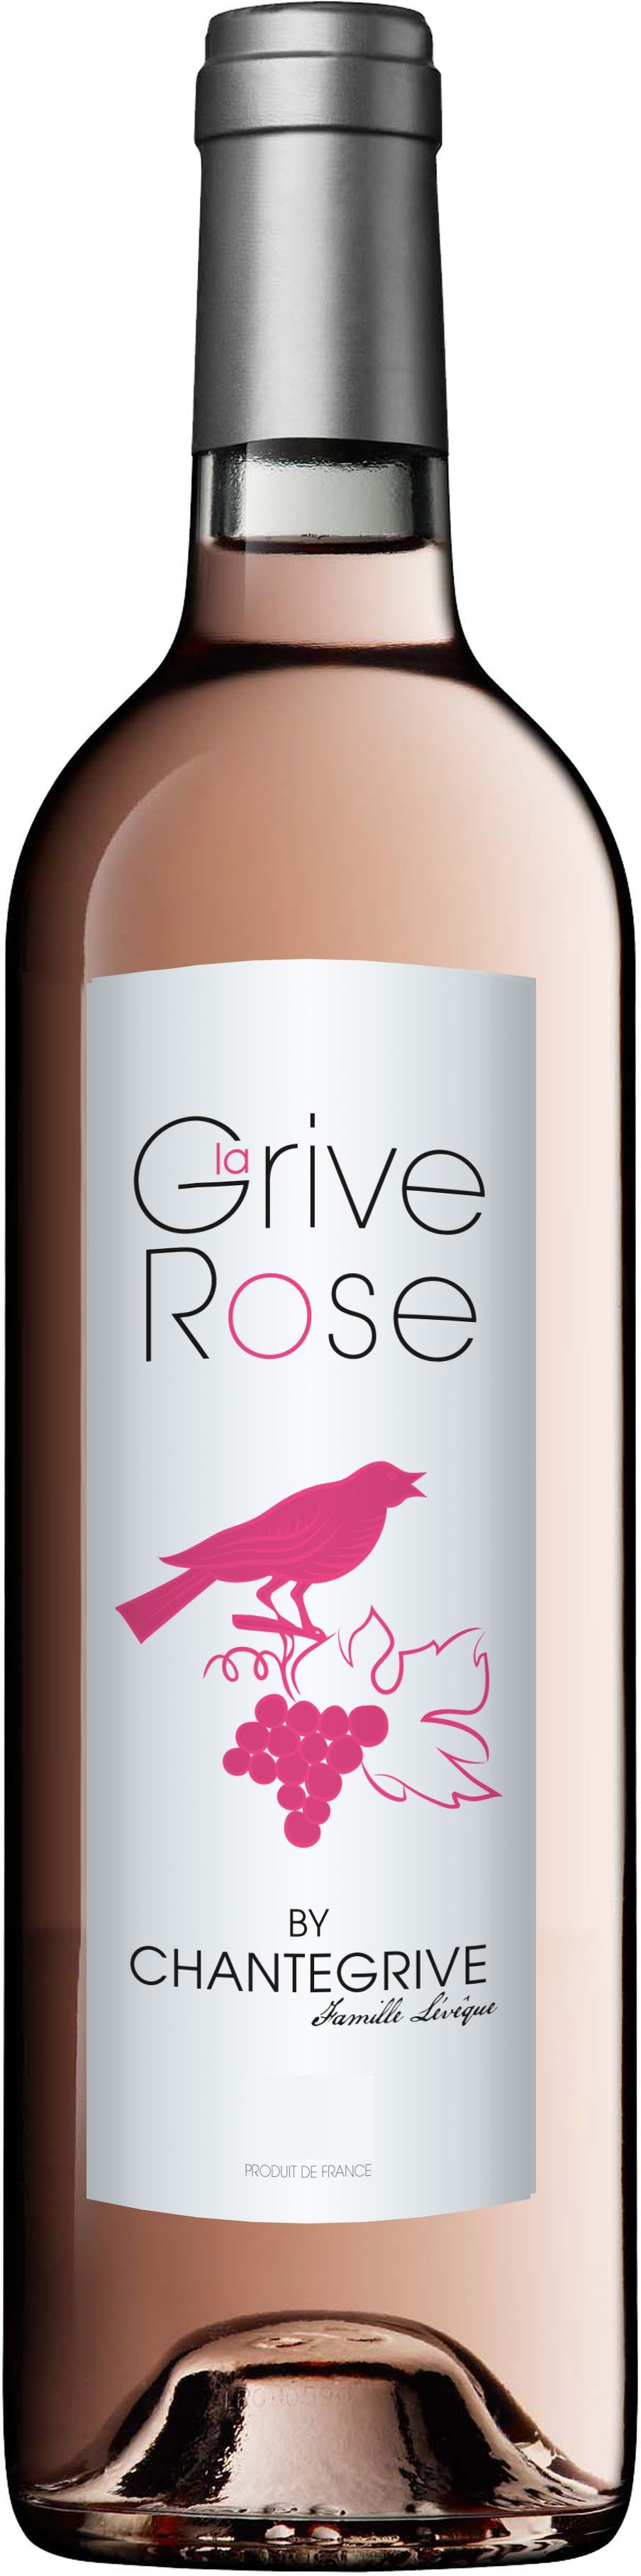 Акция на Вино Chateau de Chantegrive La Grive Rose De 2016 Bordeaux розовое сухое 0.75 л 13.5% (3760084162861) от Rozetka UA